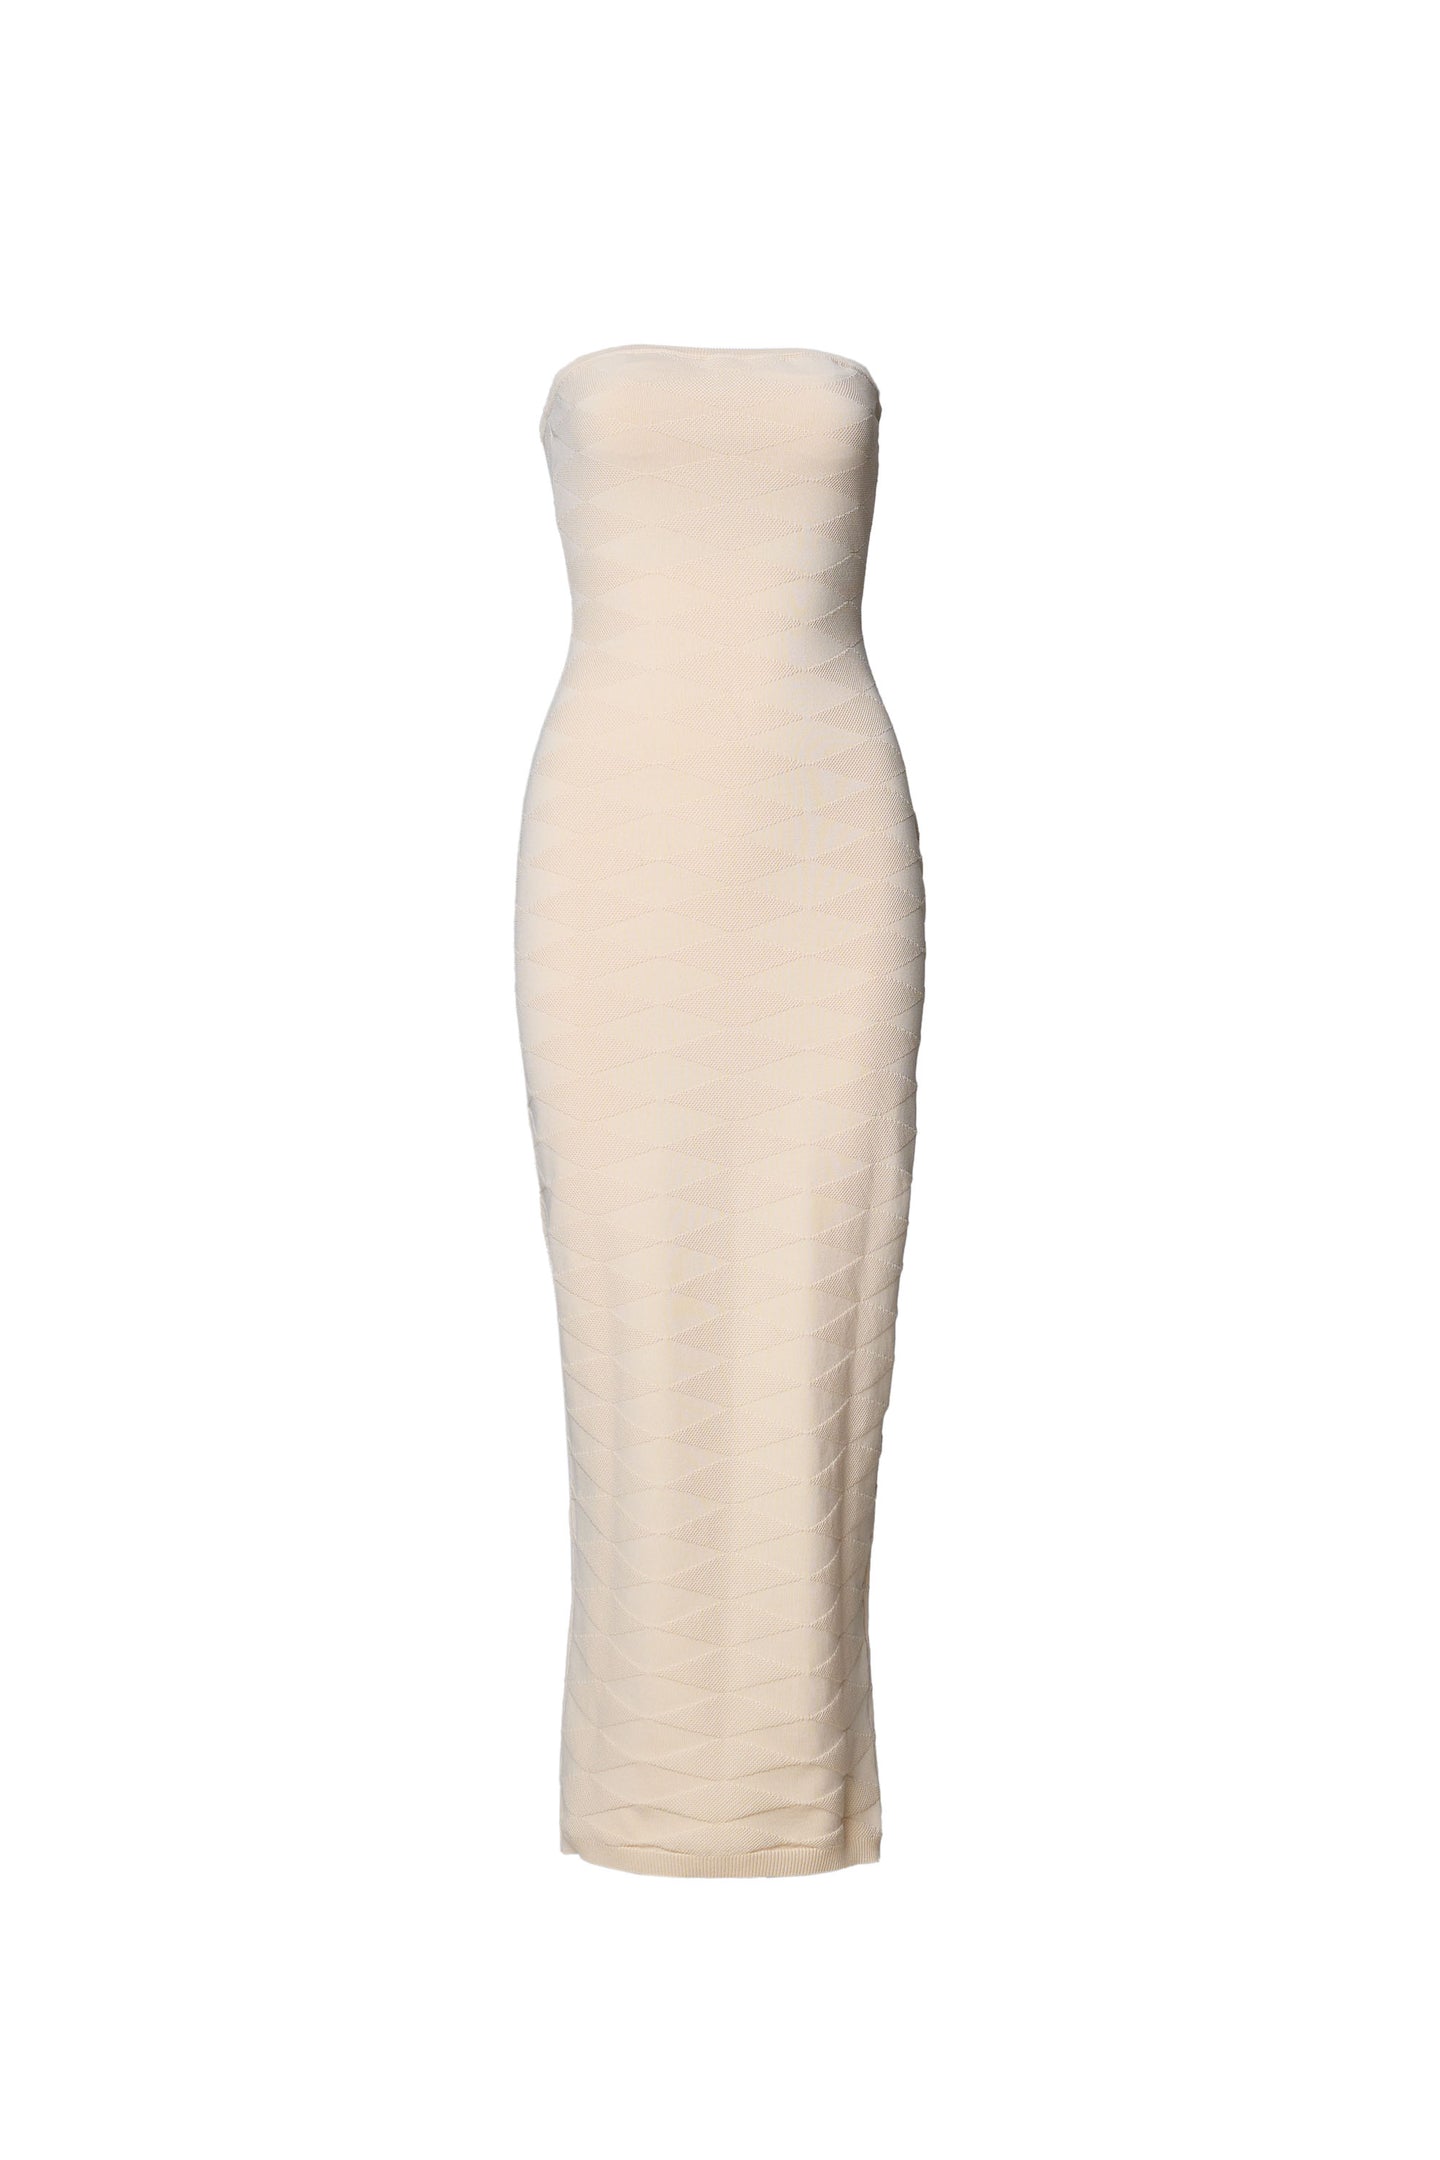 Midi tube dress in cream white – Shop midi dress – adoore.se